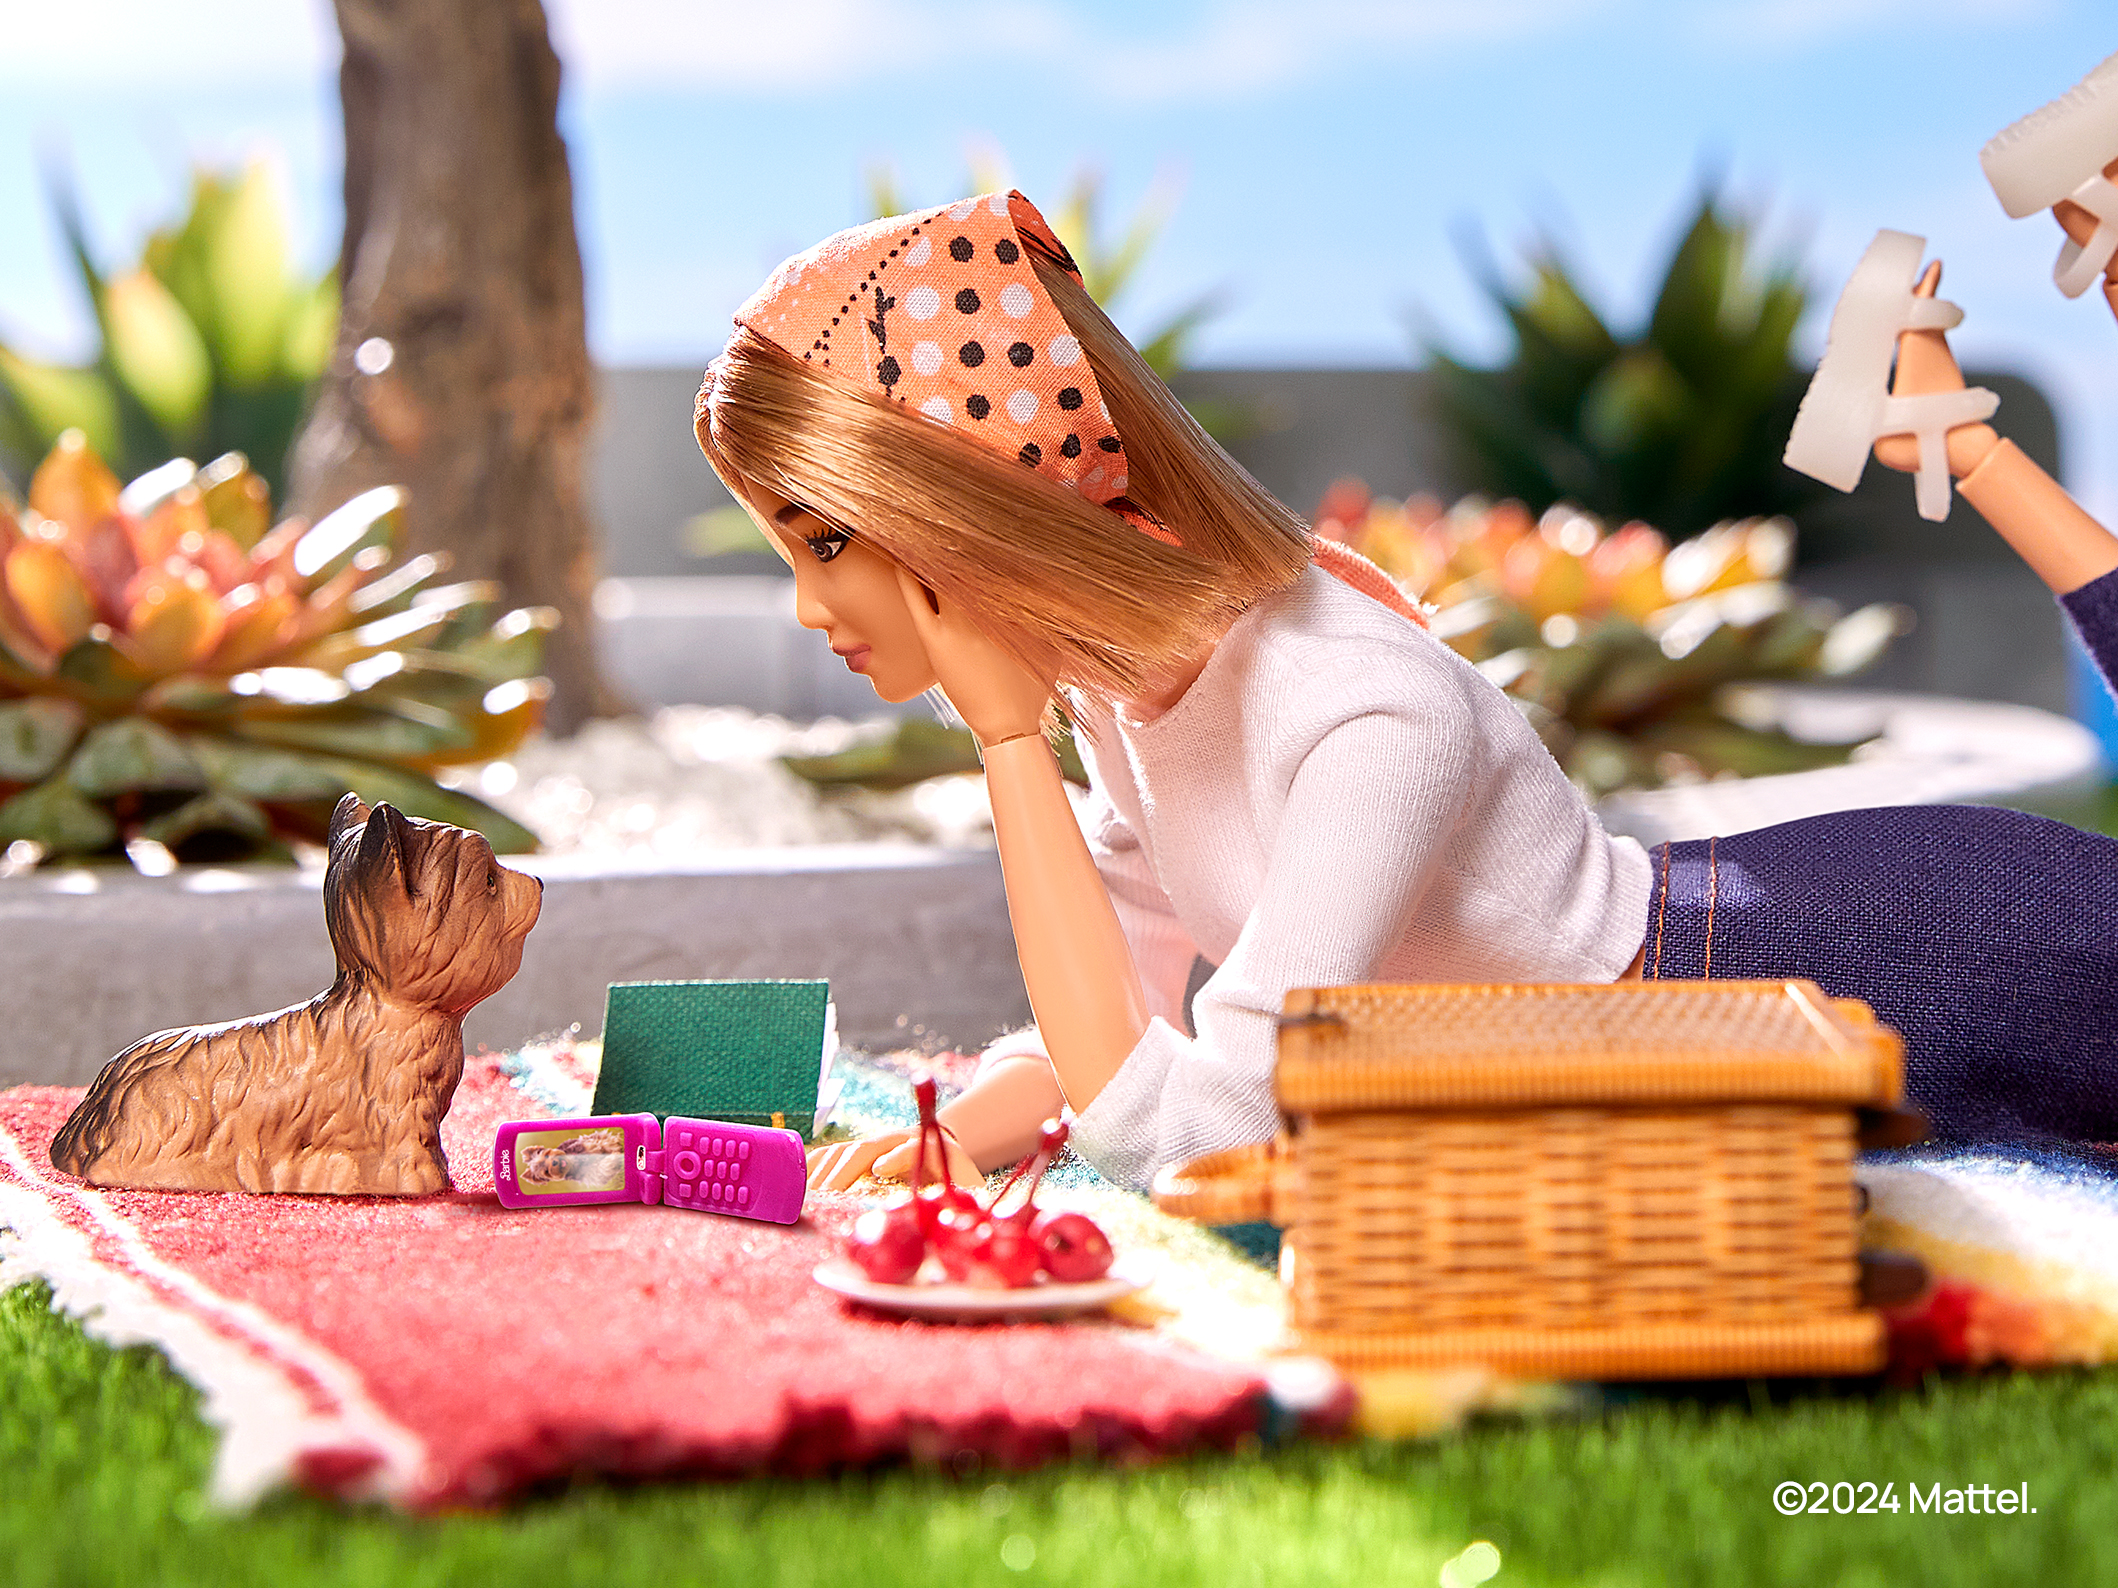 HMD sta preparando un "clamshell" in stile Barbie e uno smartphone modulare che può essere riparato in casa